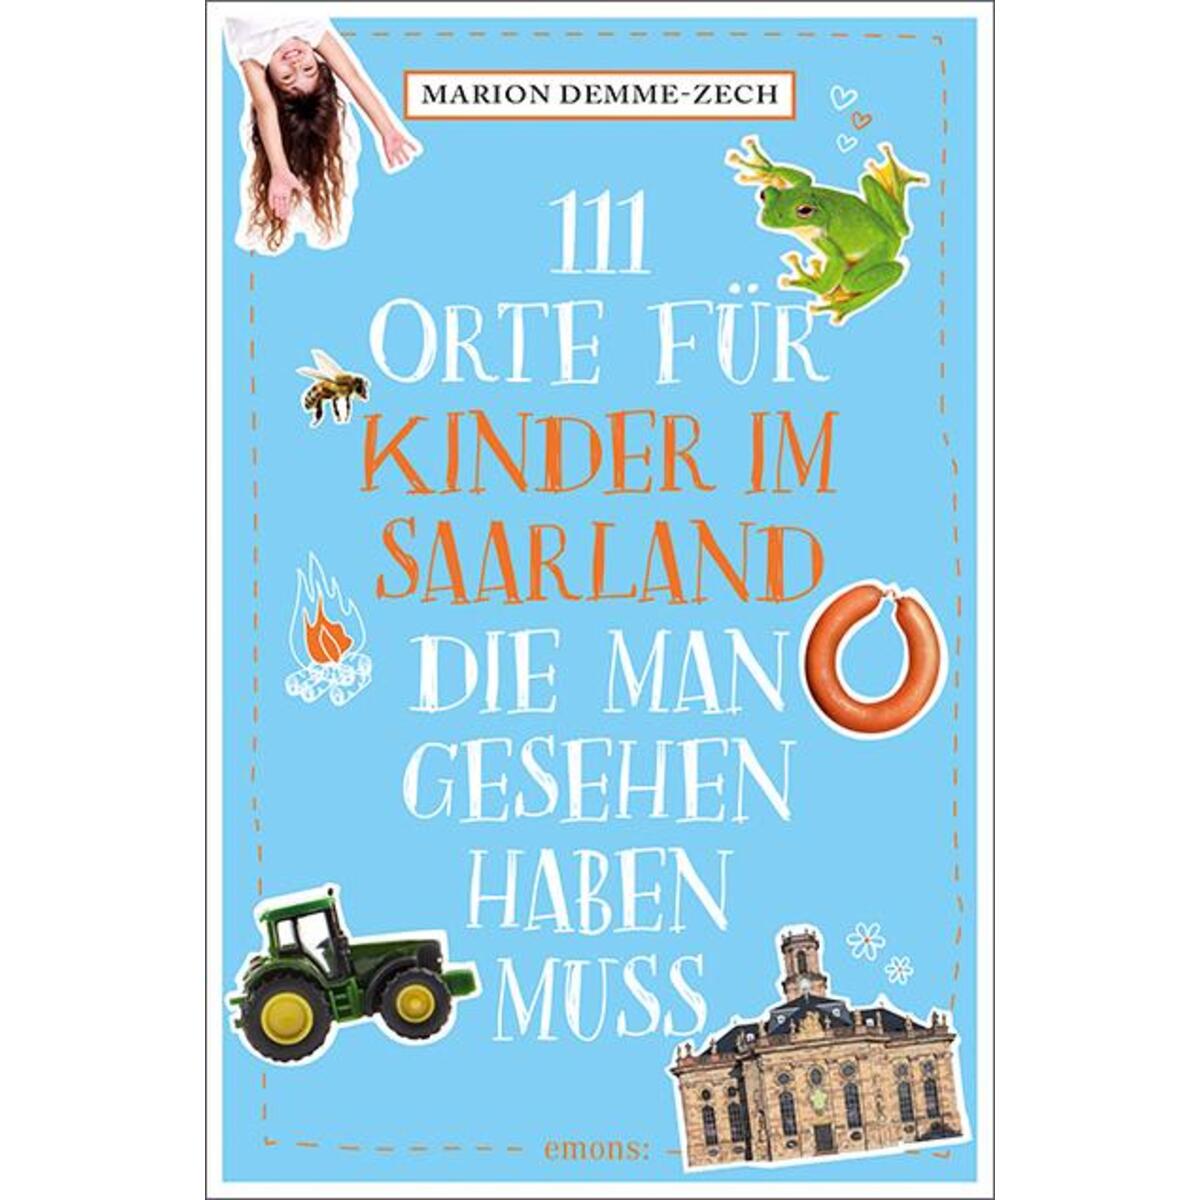 111 Orte für Kinder im Saarland, die man gesehen haben muss von Emons Verlag